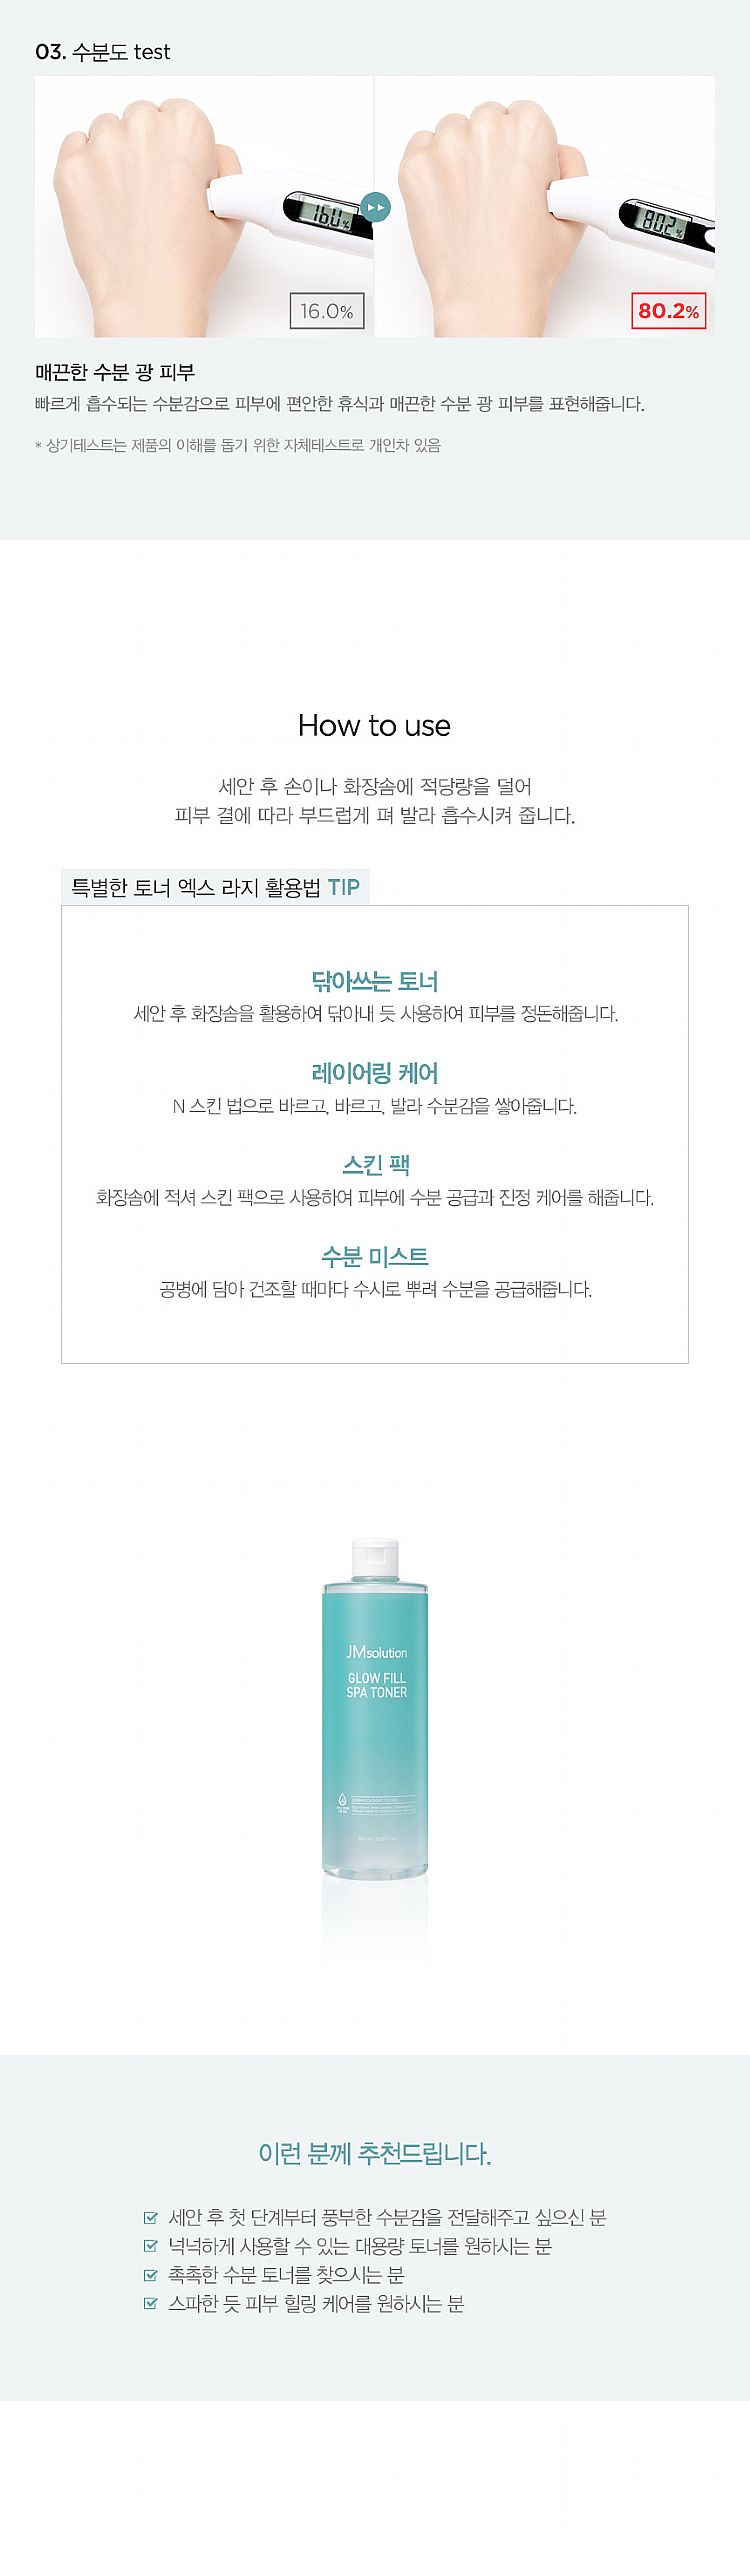 韓國 臉部保養 化妝水 臉部保養 溫和 臉部保養